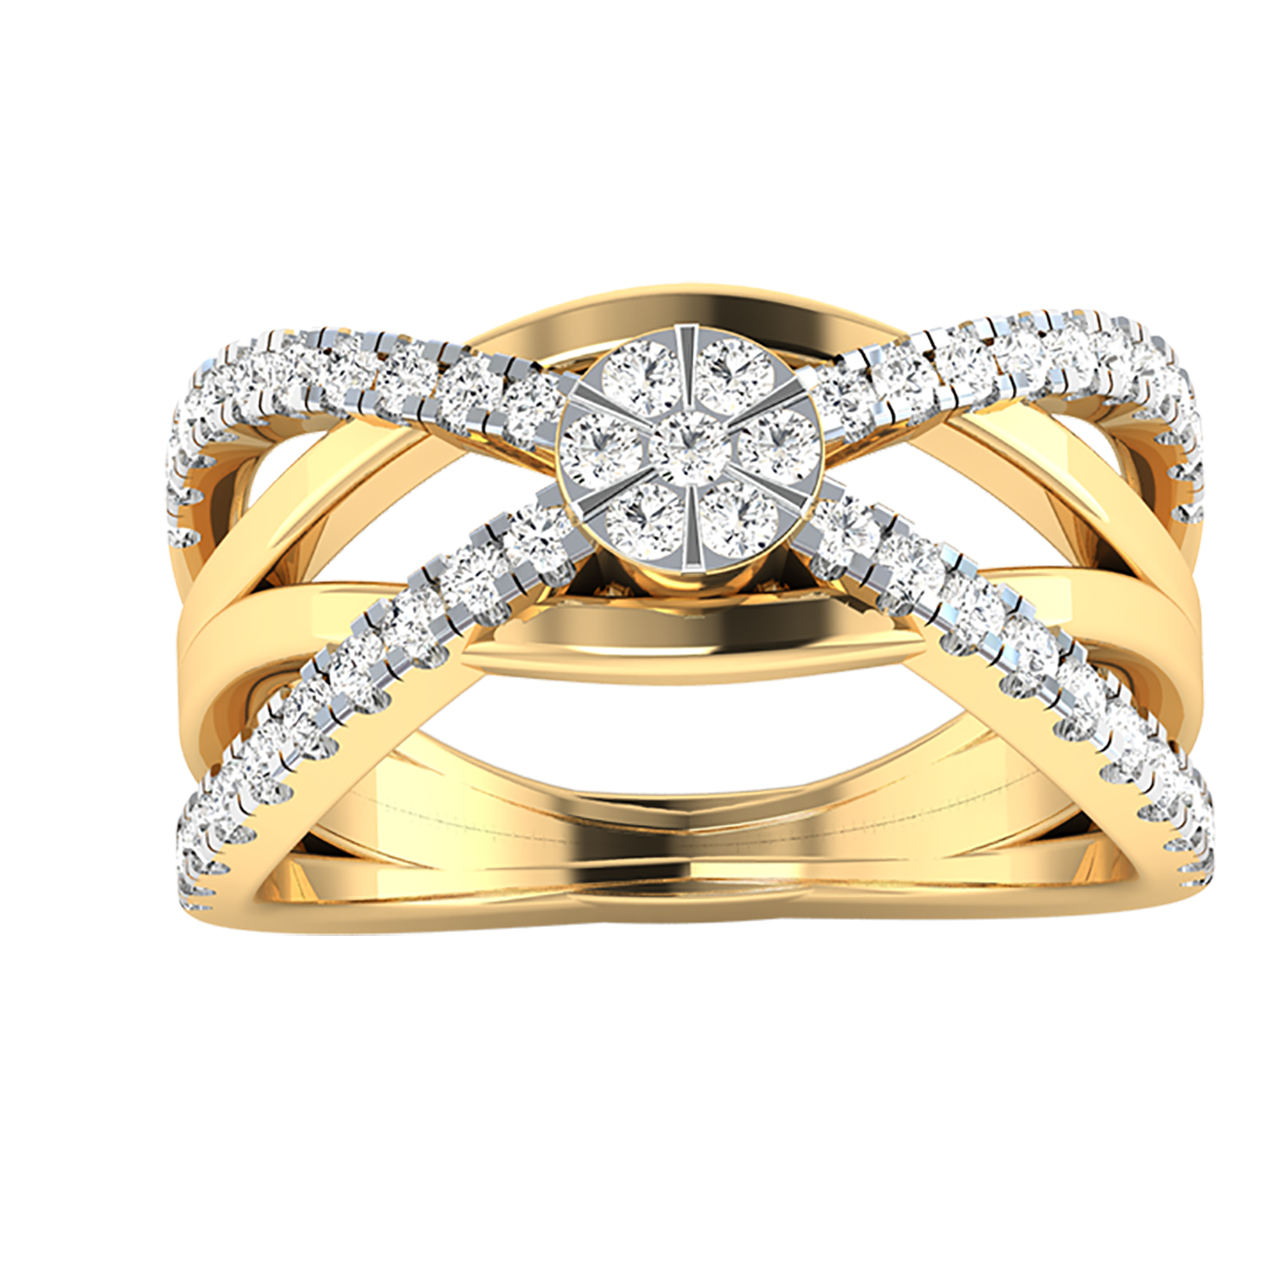 Linara Round Diamond Engagement Ring